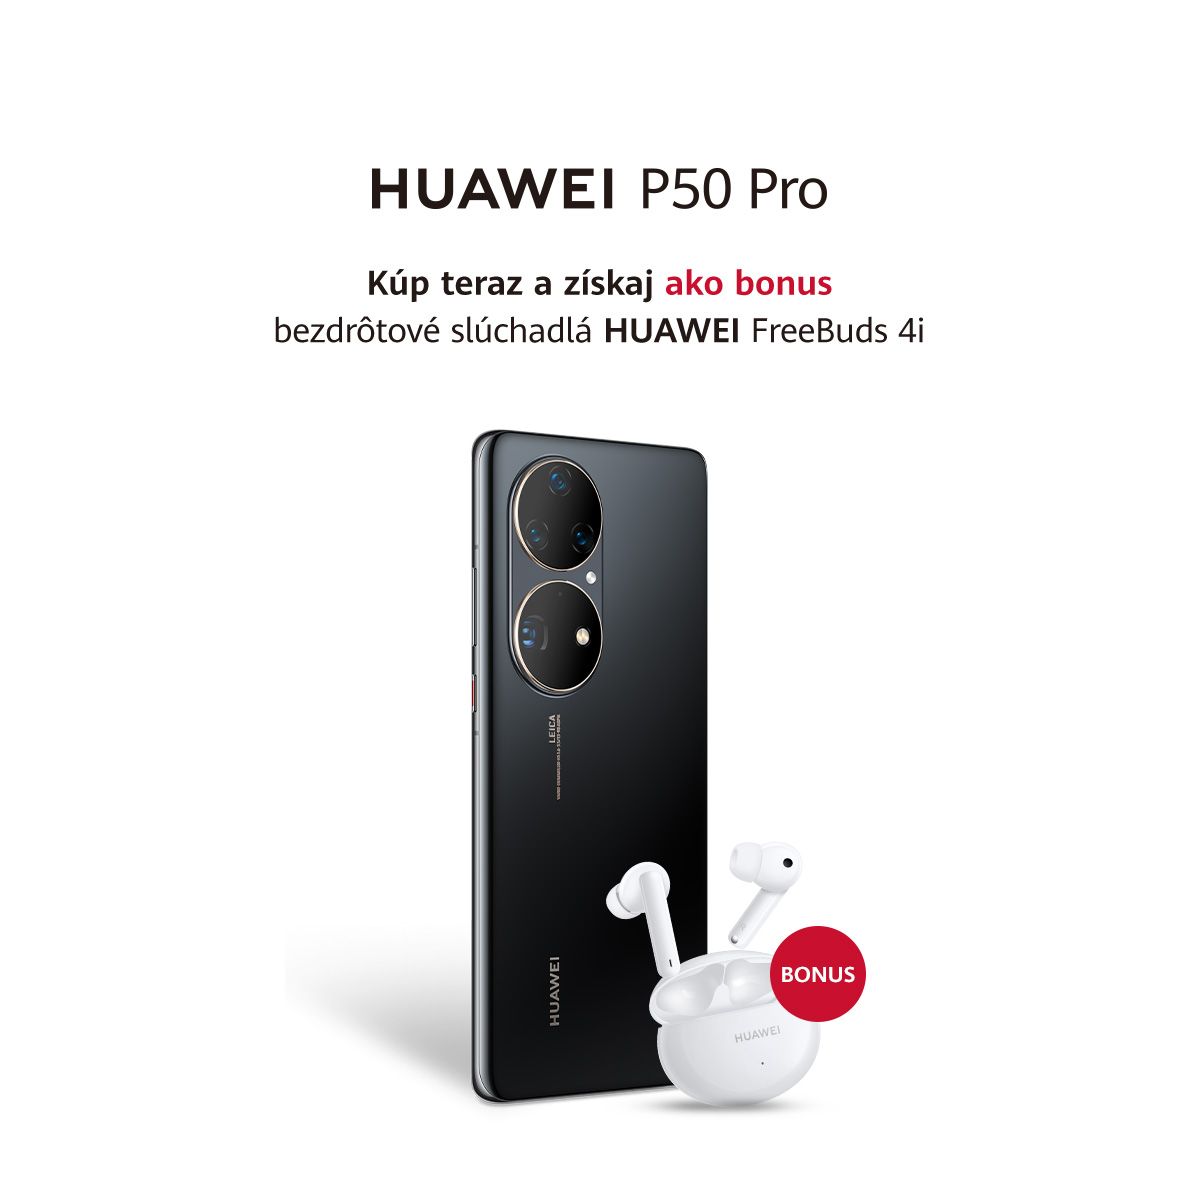 Smartfóny Huawei P50 Pro a P50 Pocket prichádzajú do predaja u slovenských operátorov